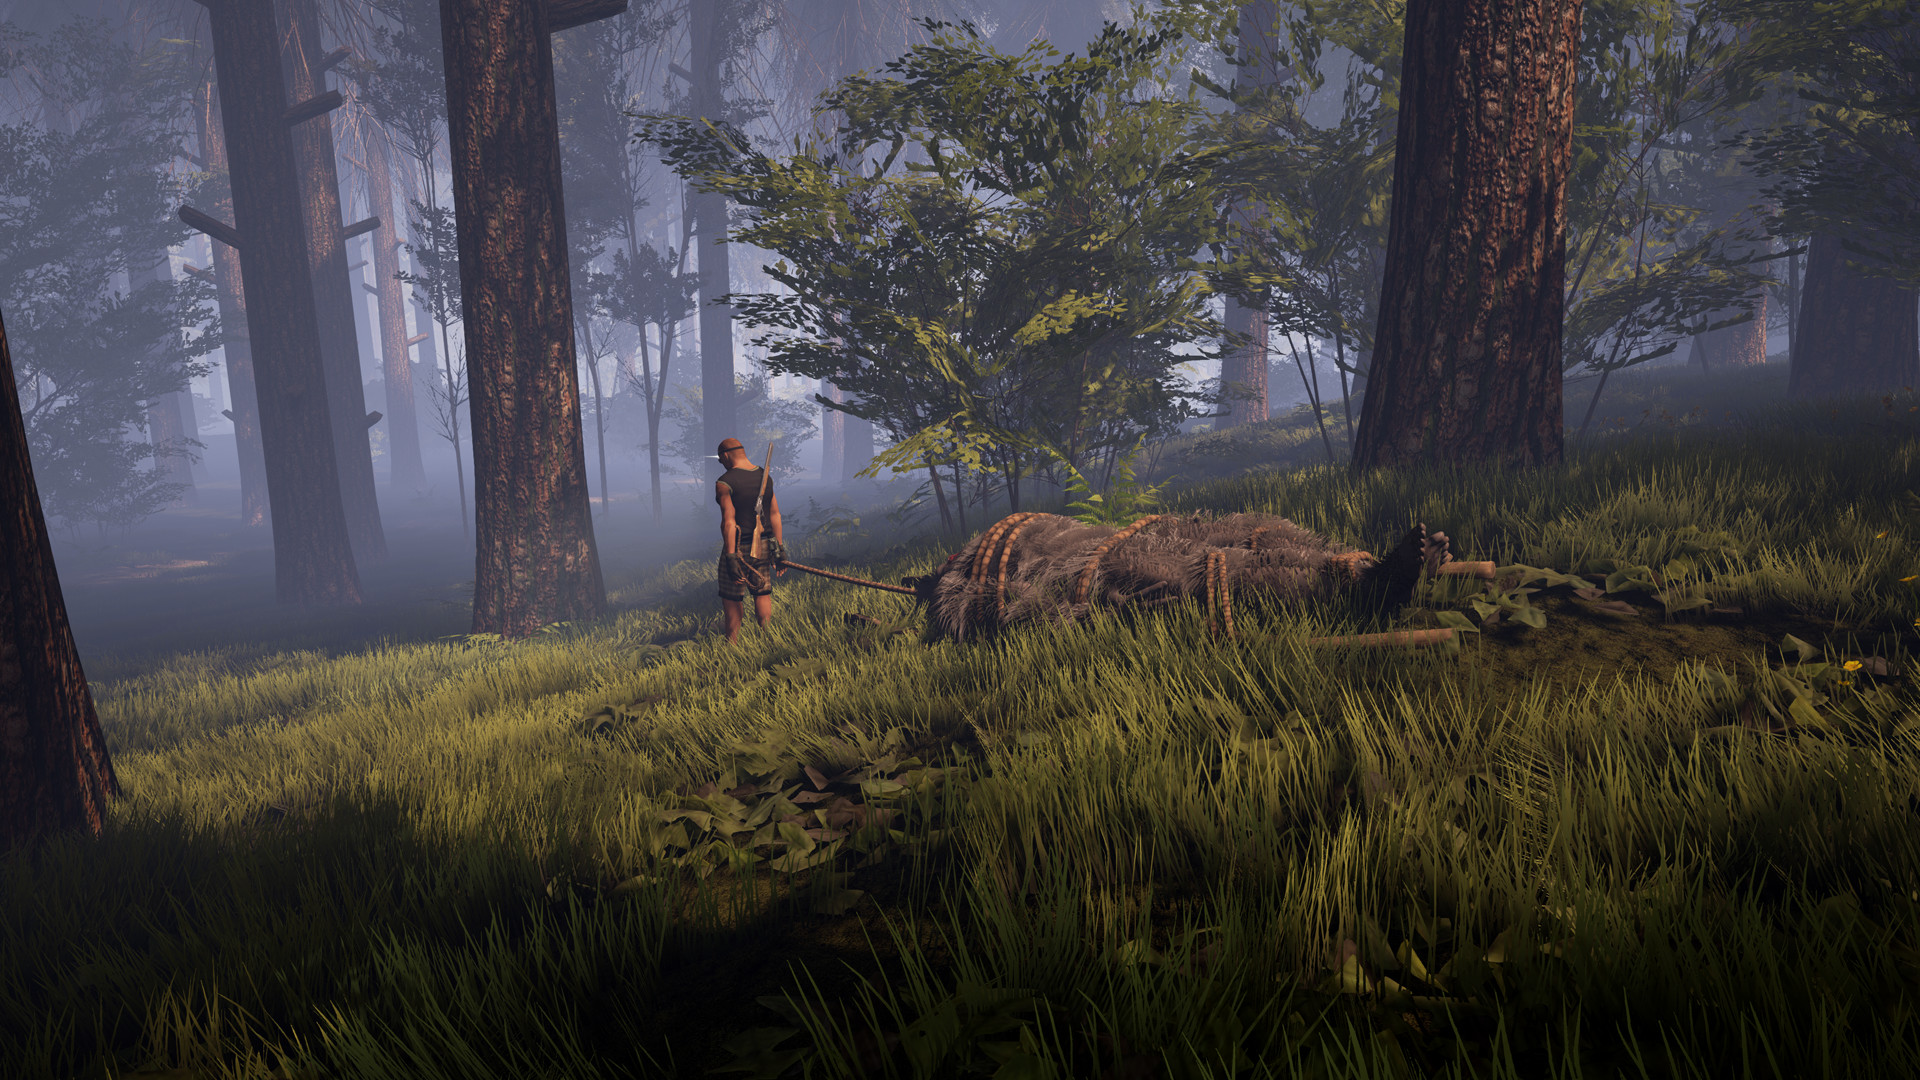 Finding Bigfoot (Game) Wiki